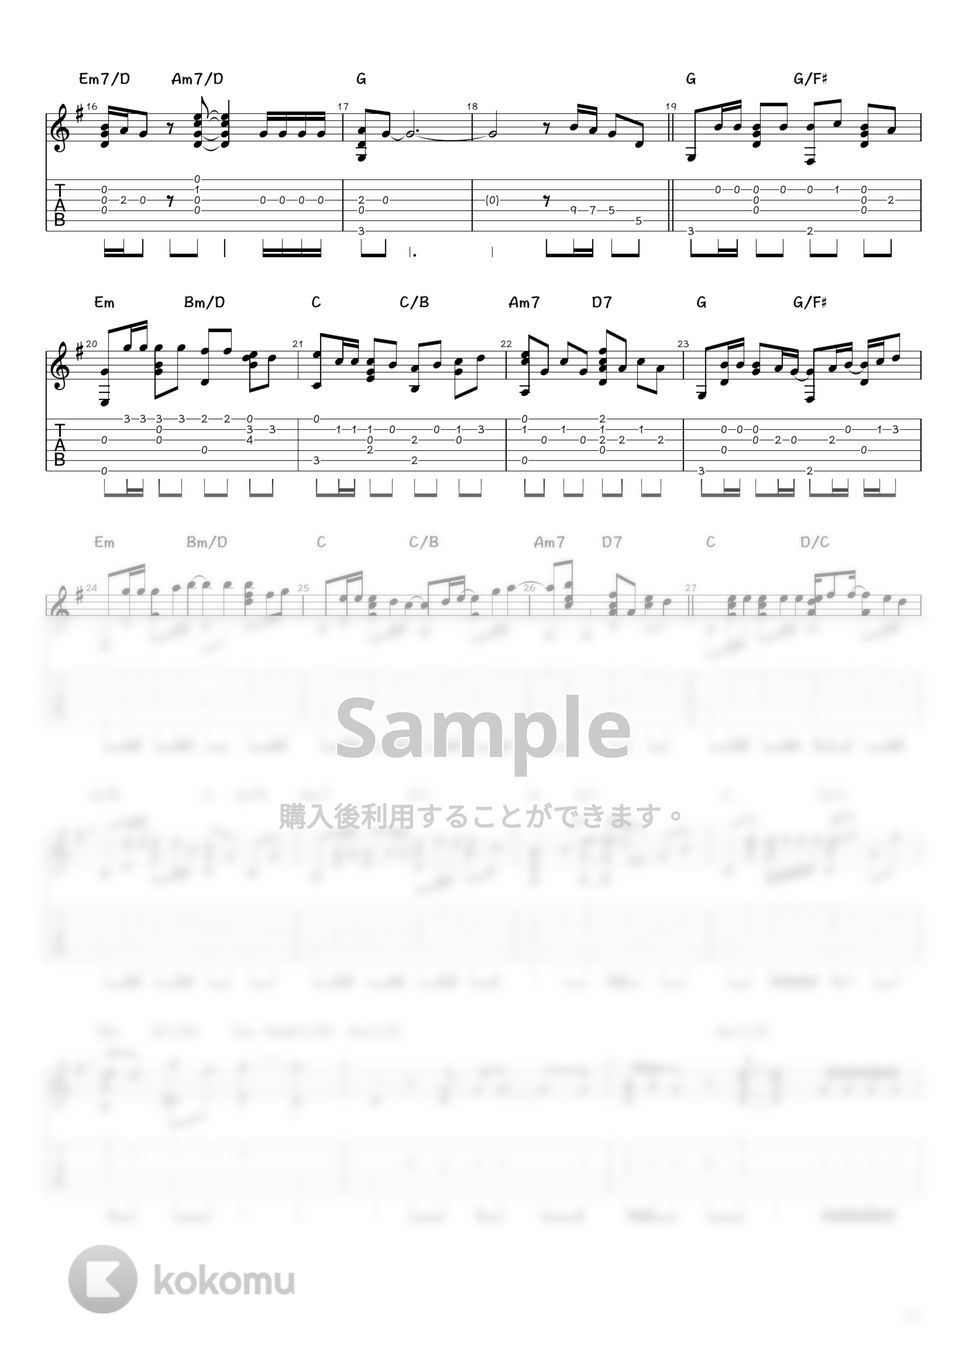 チューリップ - 青春の影 (ソロギター / タブ譜) by 井上さとみ